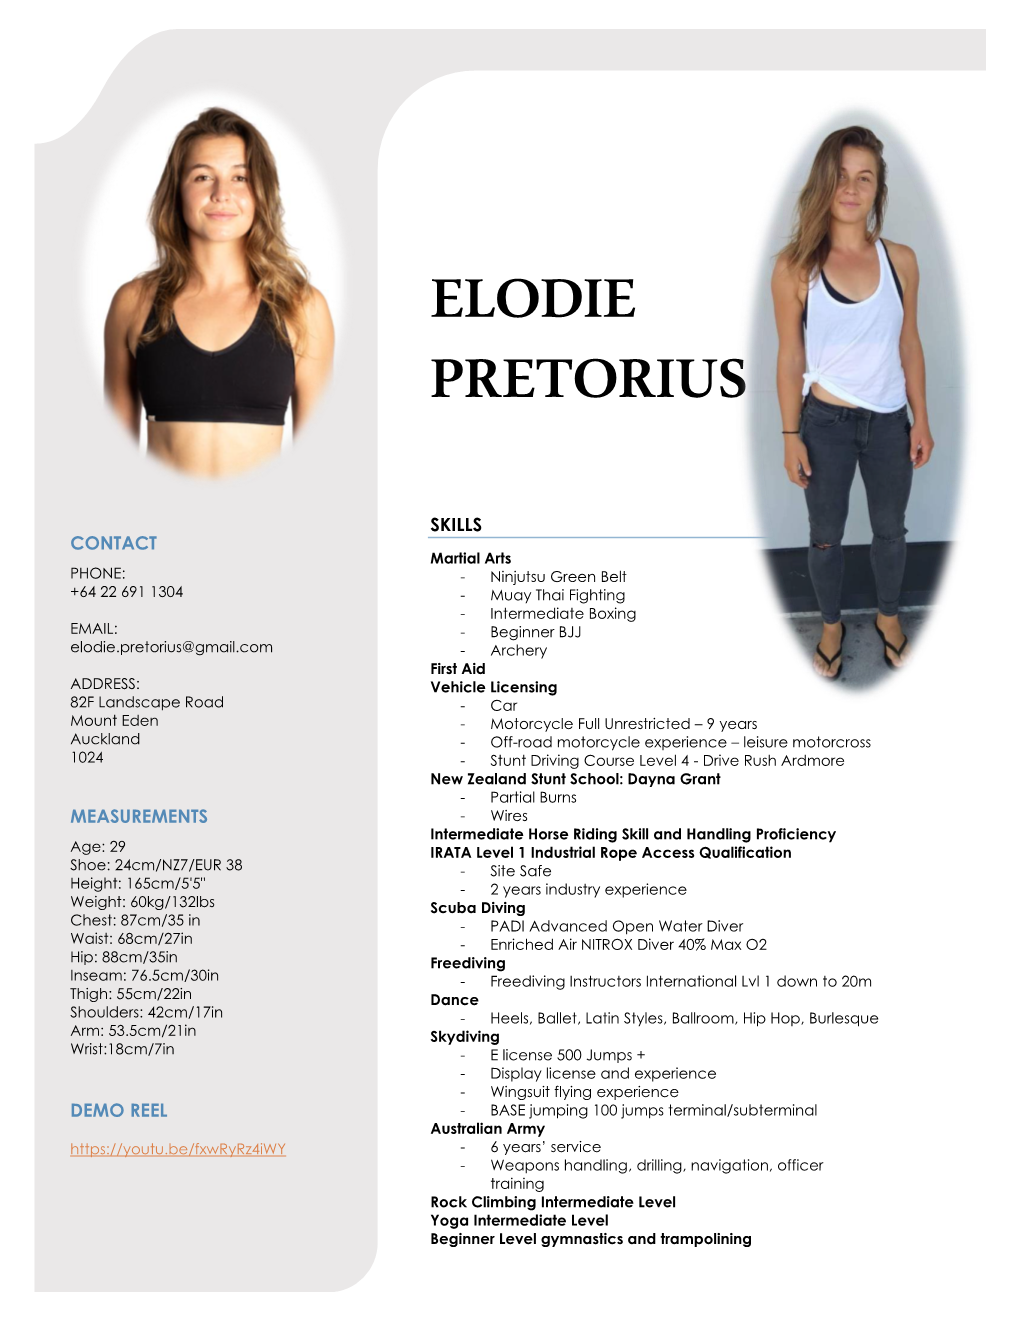 Elodie Pretorius